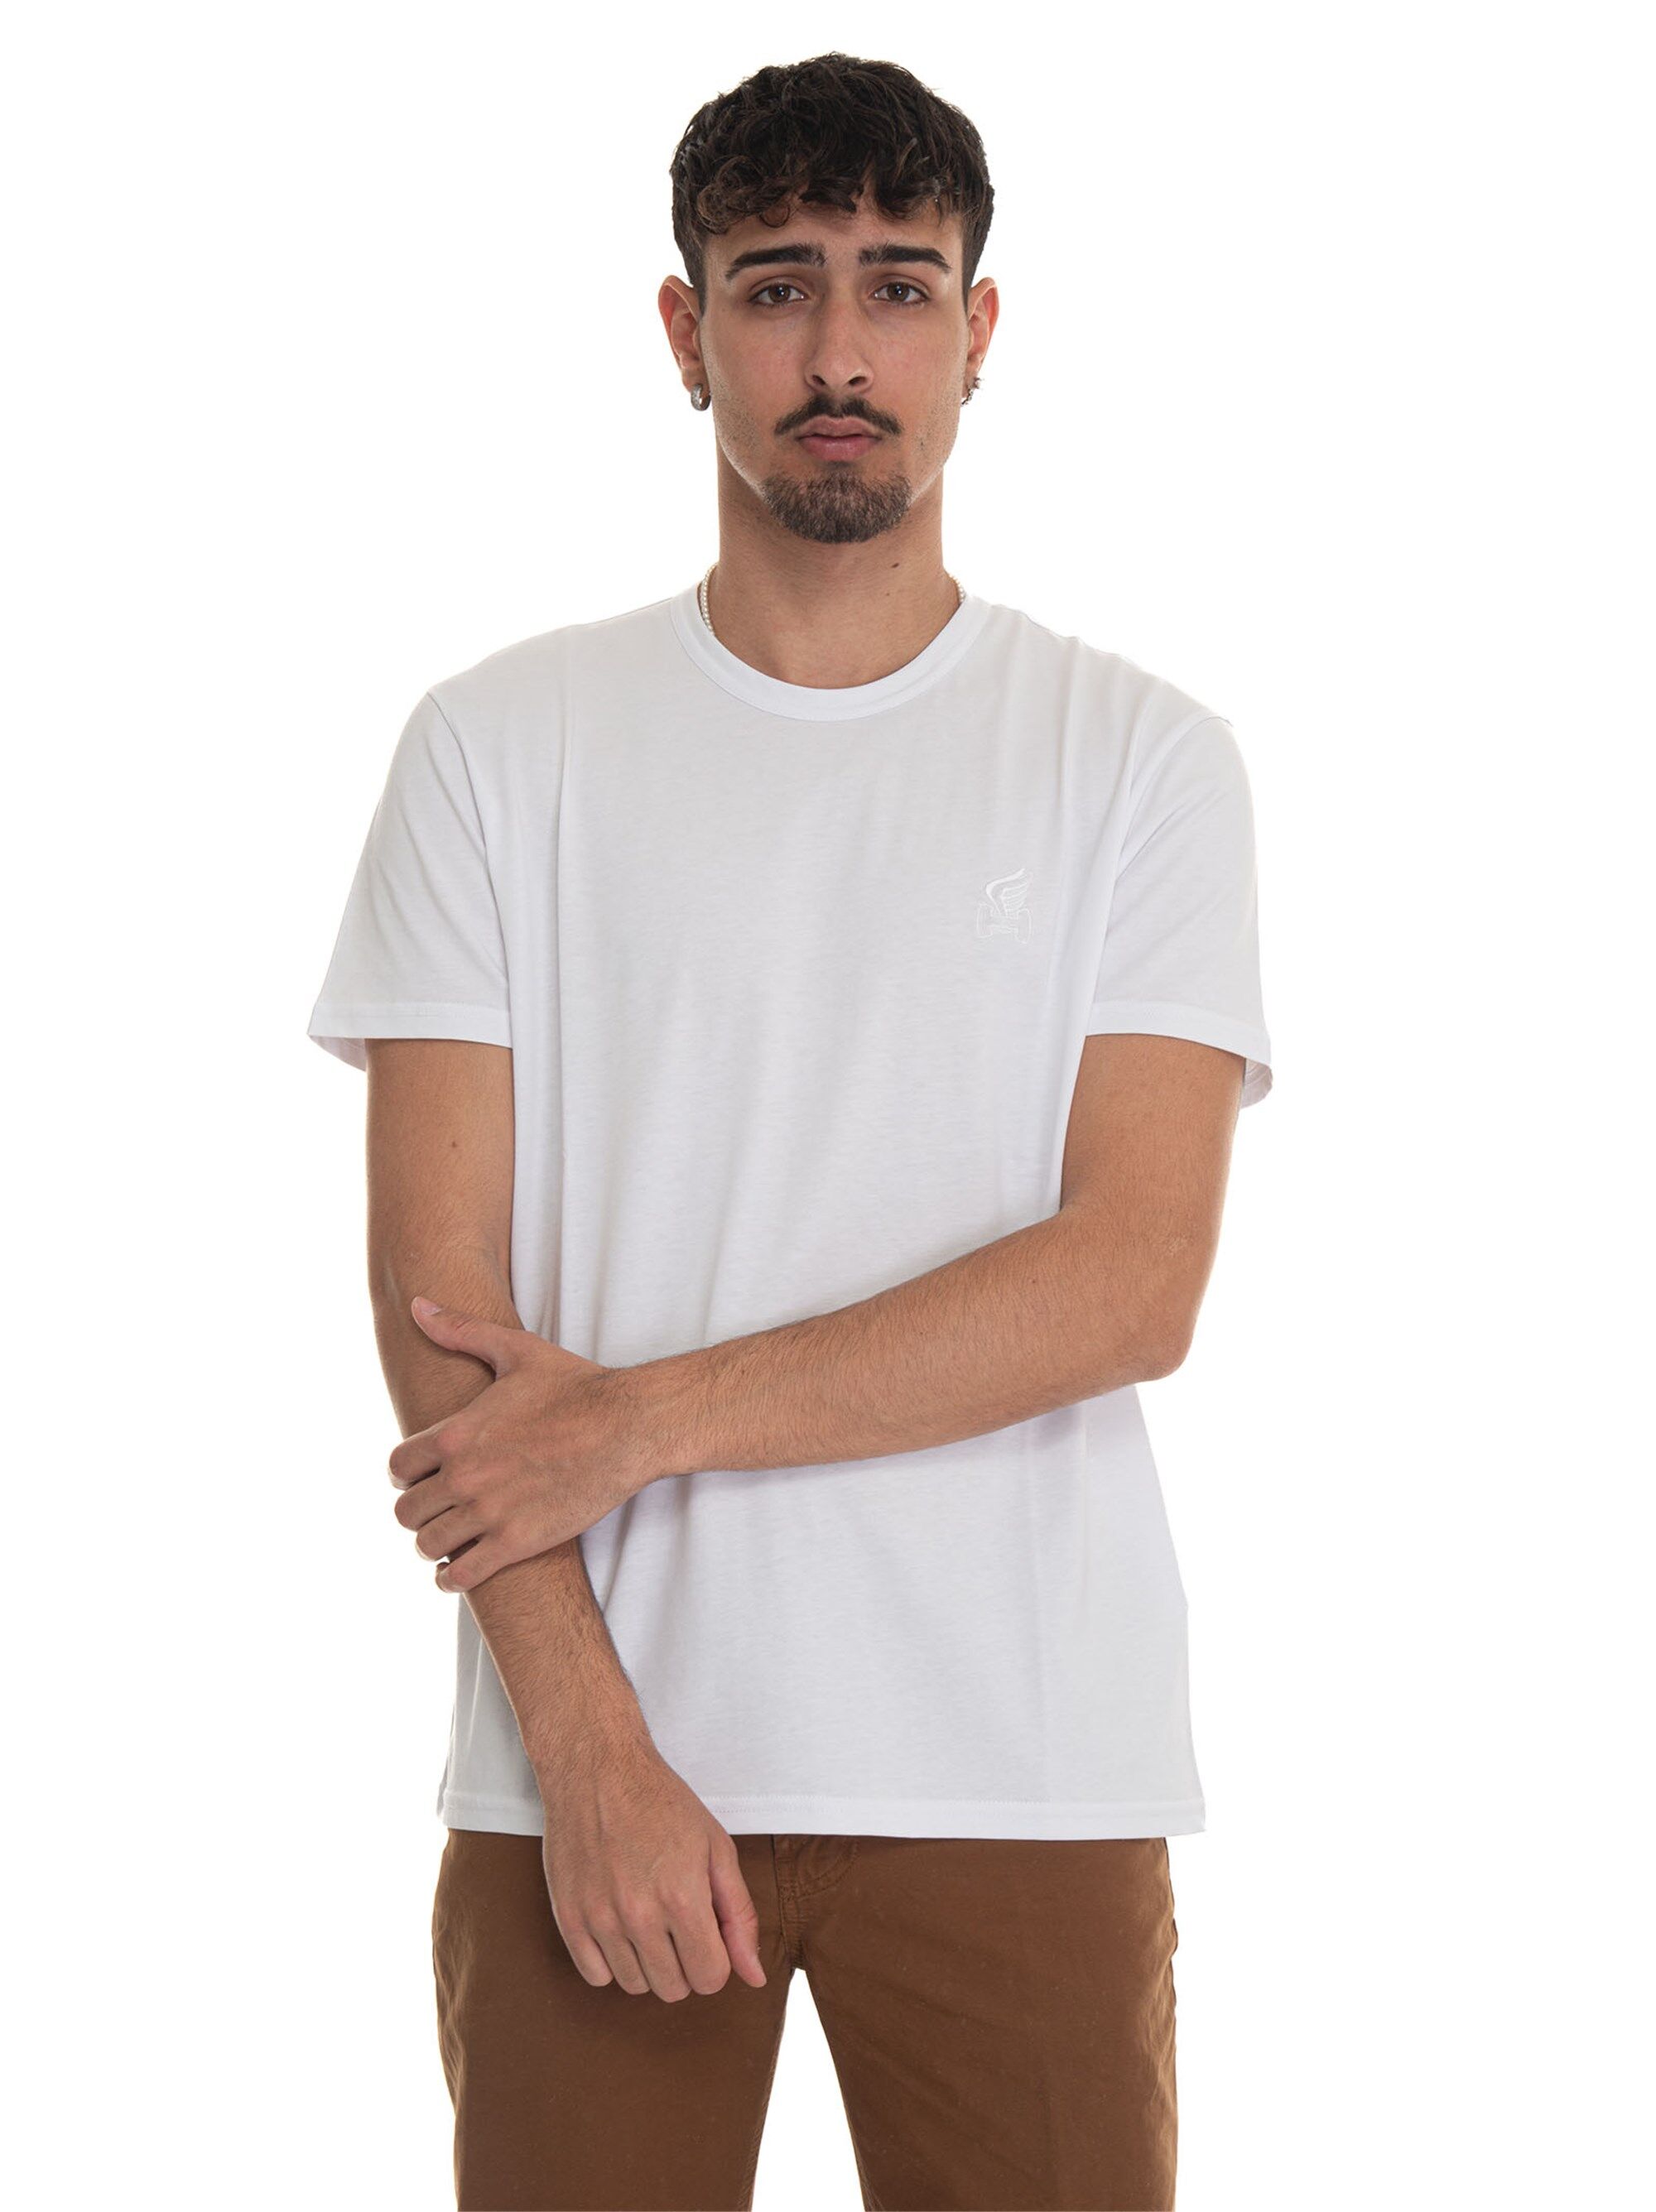 Hogan T-shirt girocollo mezza manica Bianco Uomo XL